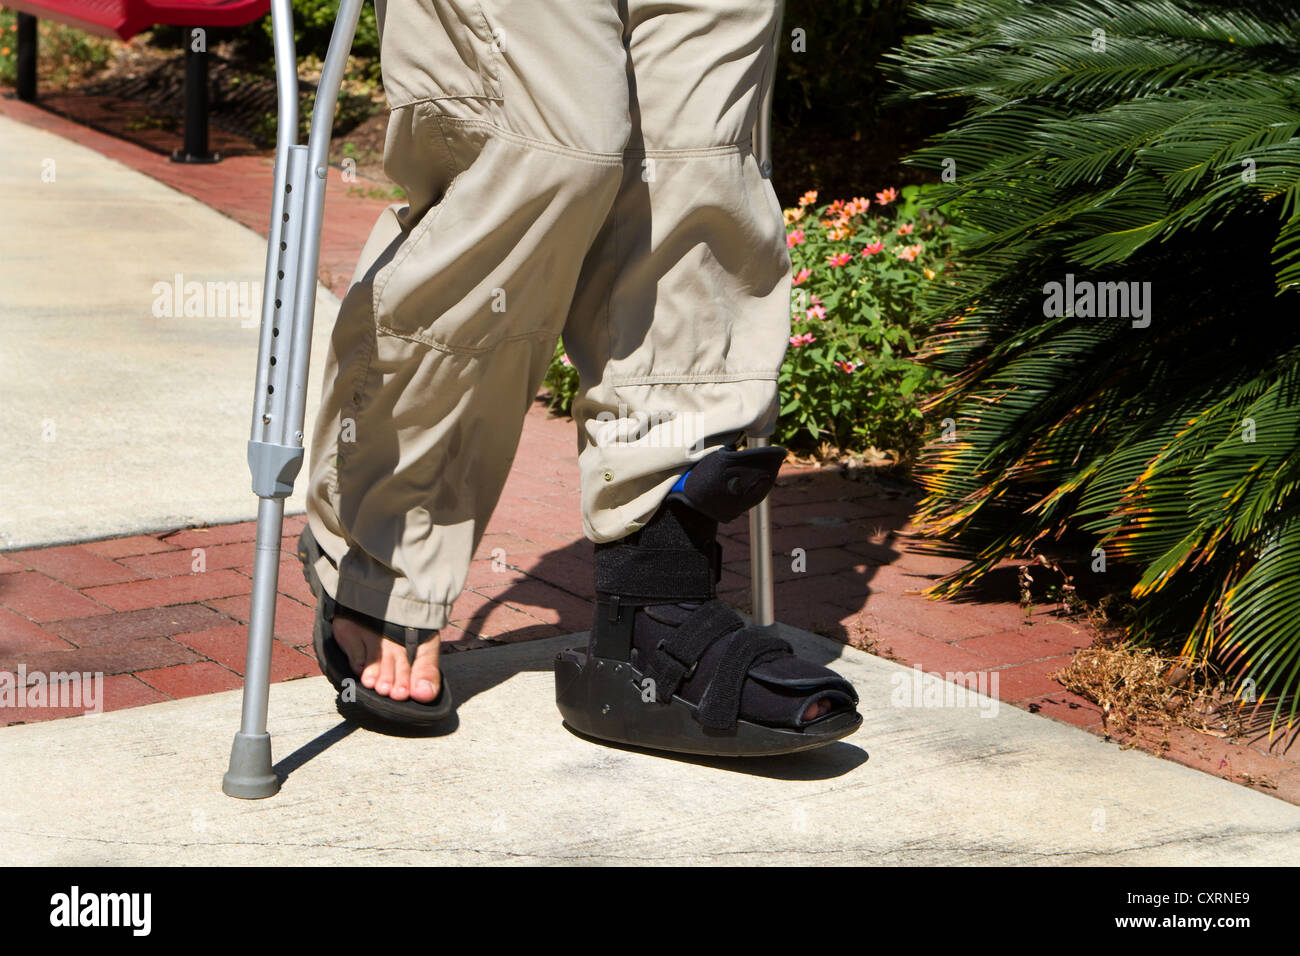 Der Mensch nutzt Krücken zusammen mit einer Fuß- und Sprunggelenk Orthese,  um ihm nach einem Unfallschaden laufen zu helfen Stockfotografie - Alamy